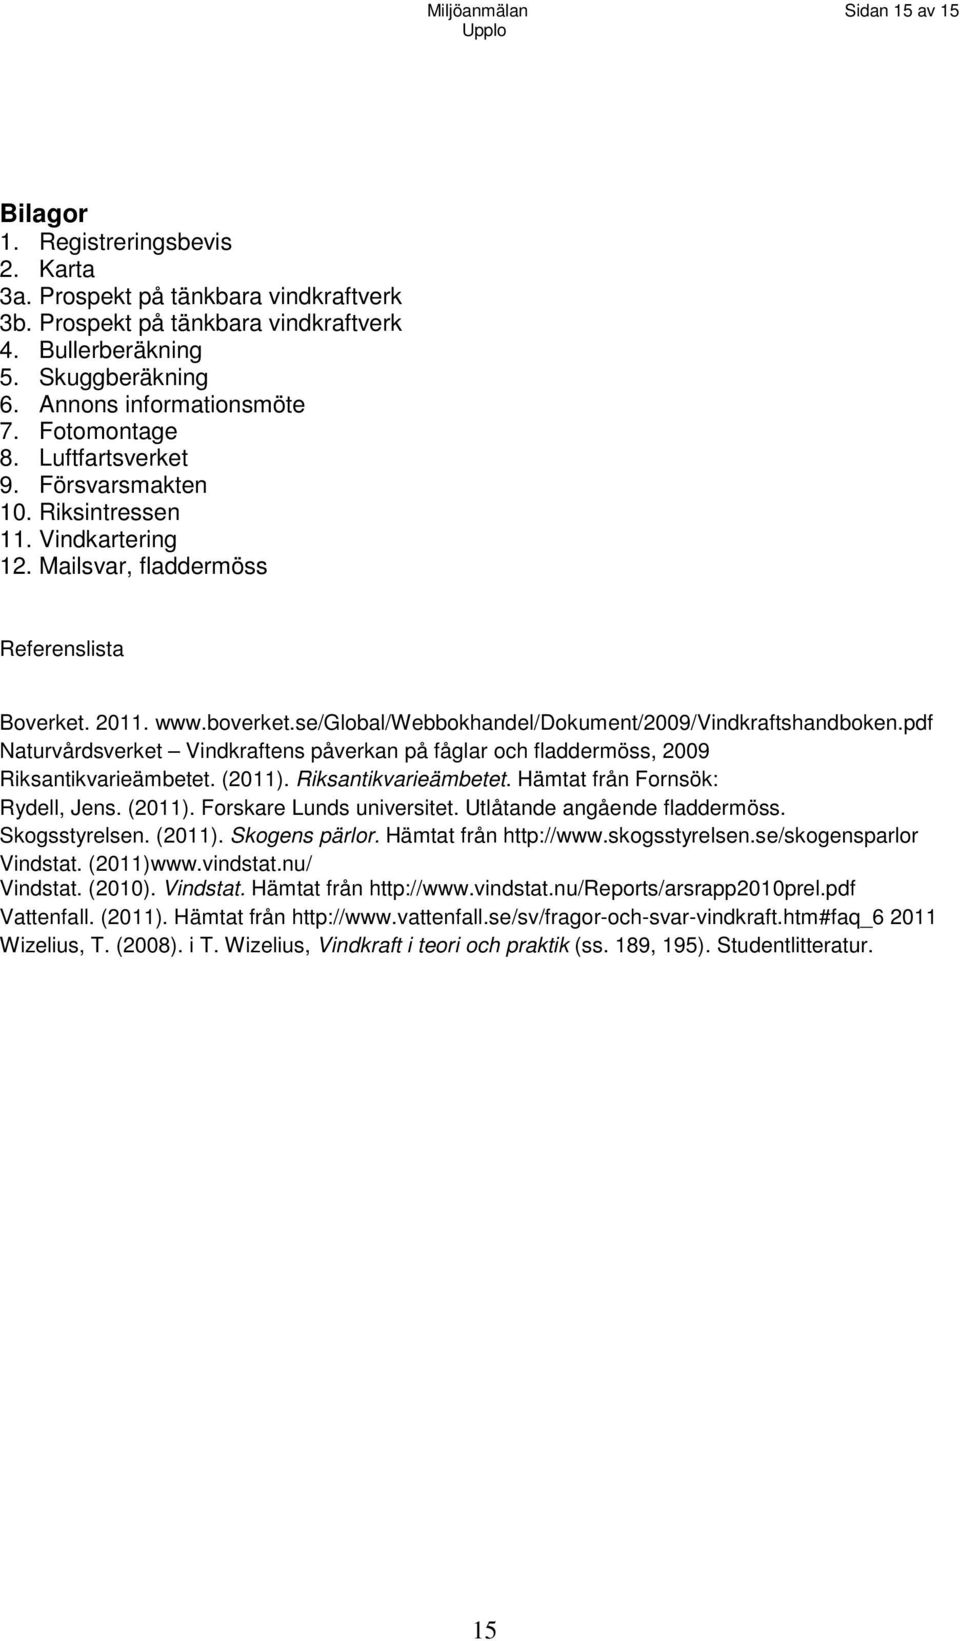 se/global/webbokhandel/dokument/2009/vindkraftshandboken.pdf Naturvårdsverket Vindkraftens påverkan på fåglar och fladdermöss, 2009 Riksantikvarieämbetet. (2011). Riksantikvarieämbetet. Hämtat från Fornsök: Rydell, Jens.